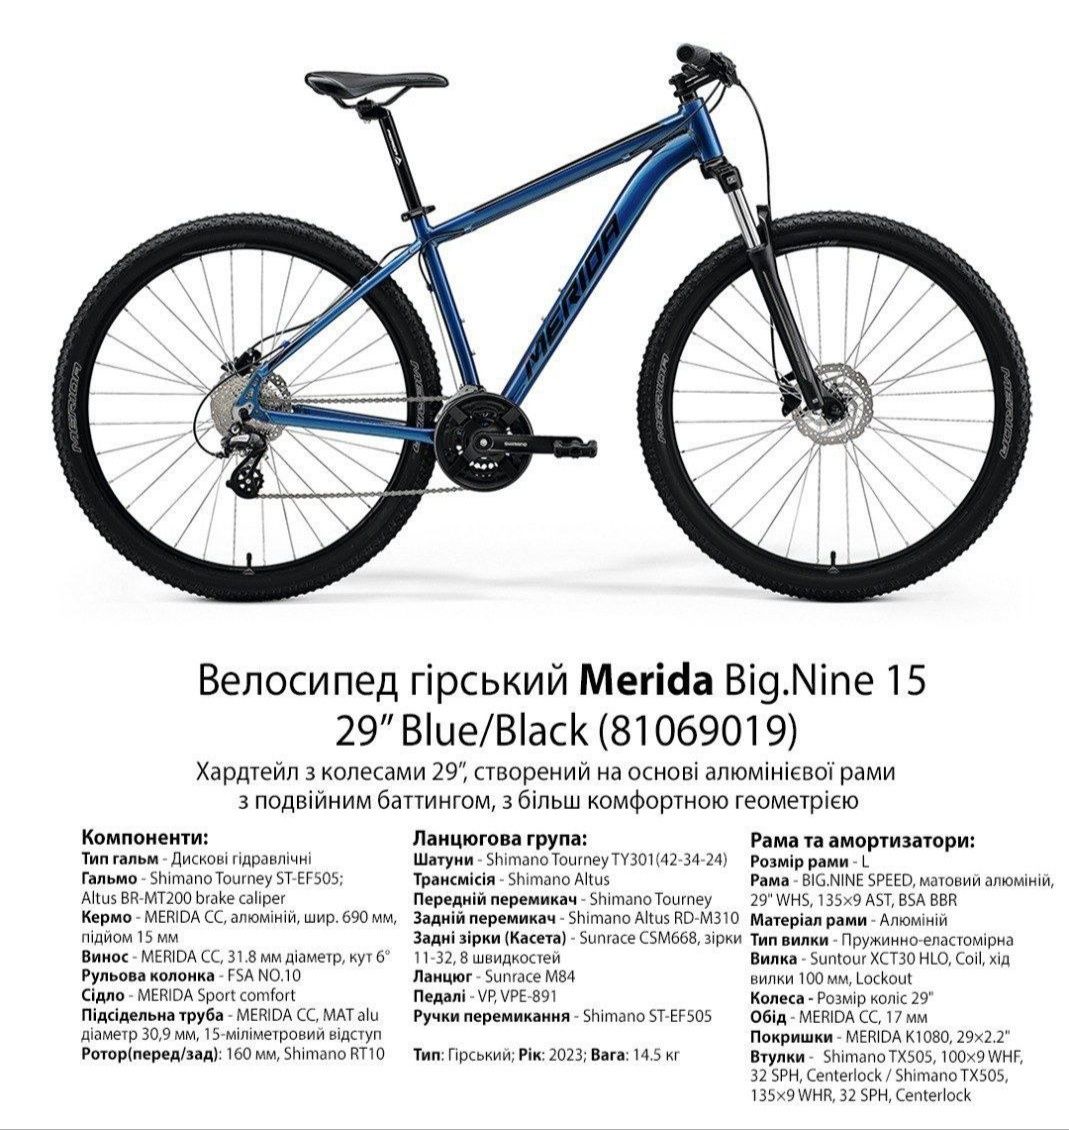 Велосипед Merida Big.Nine 15 29″ Blue/Black 

розміри:
M - 4 шт
L - 5